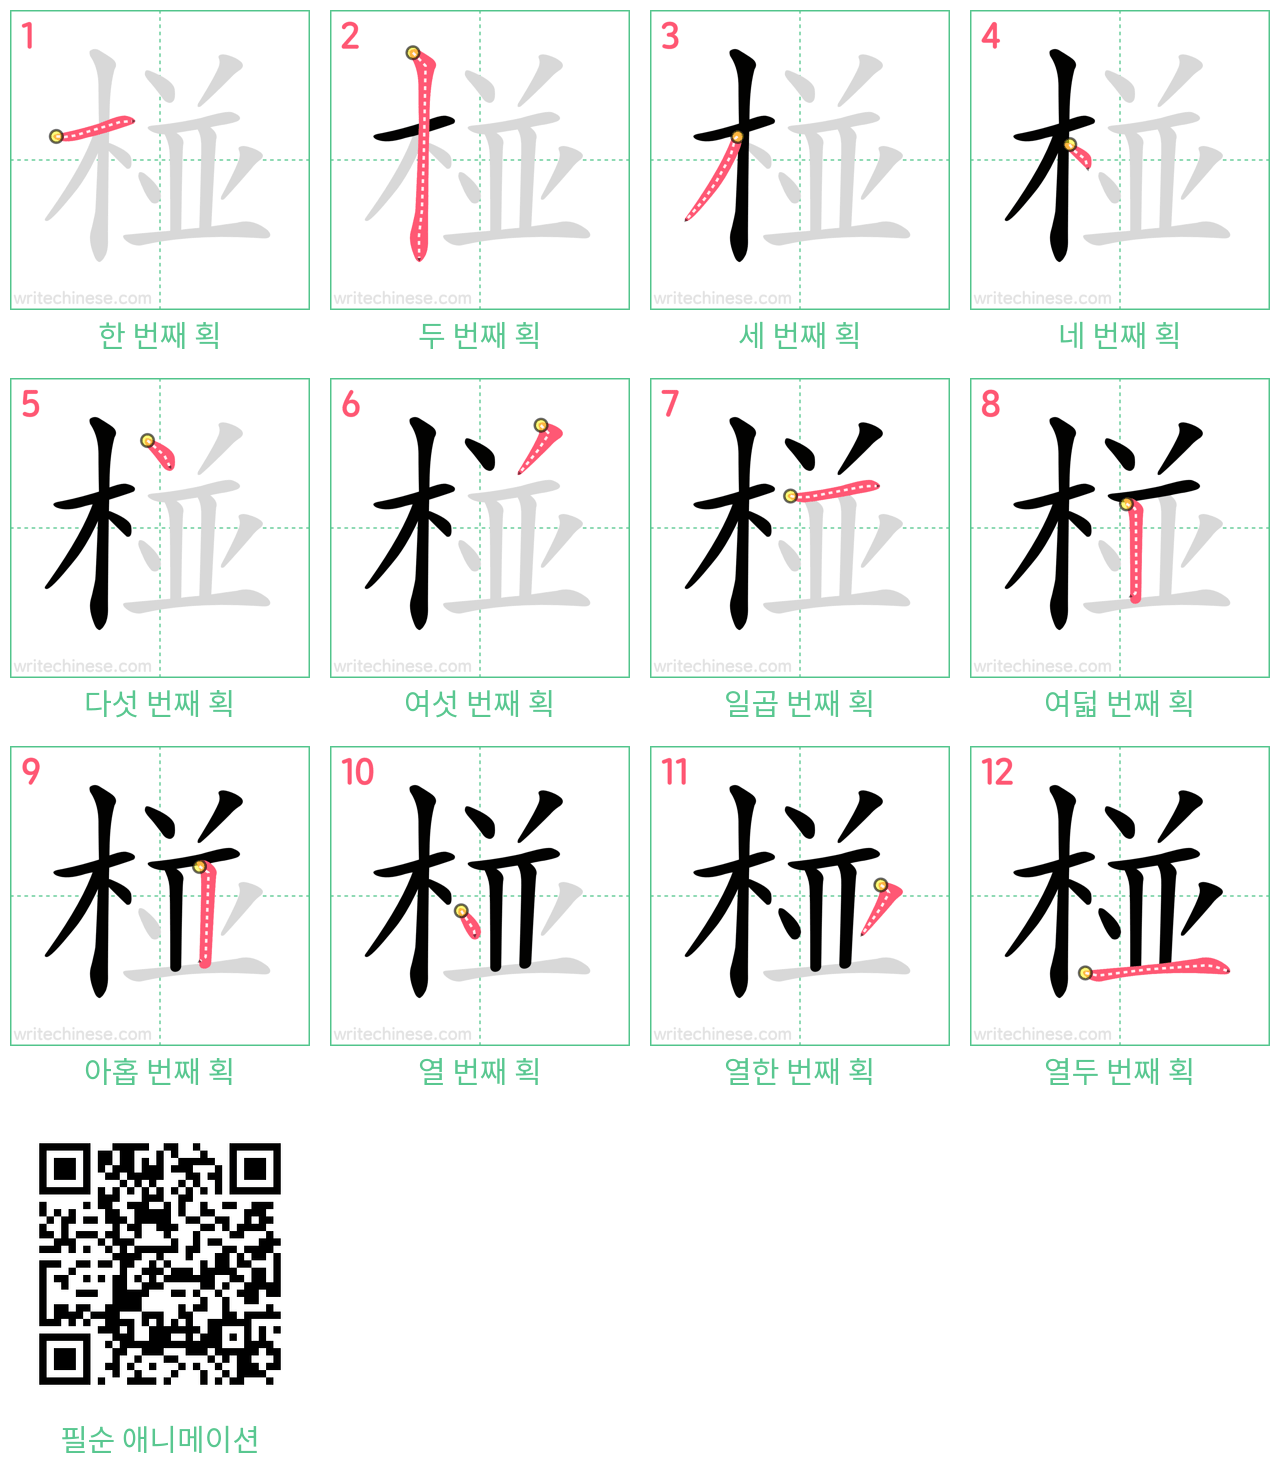 椪 step-by-step stroke order diagrams